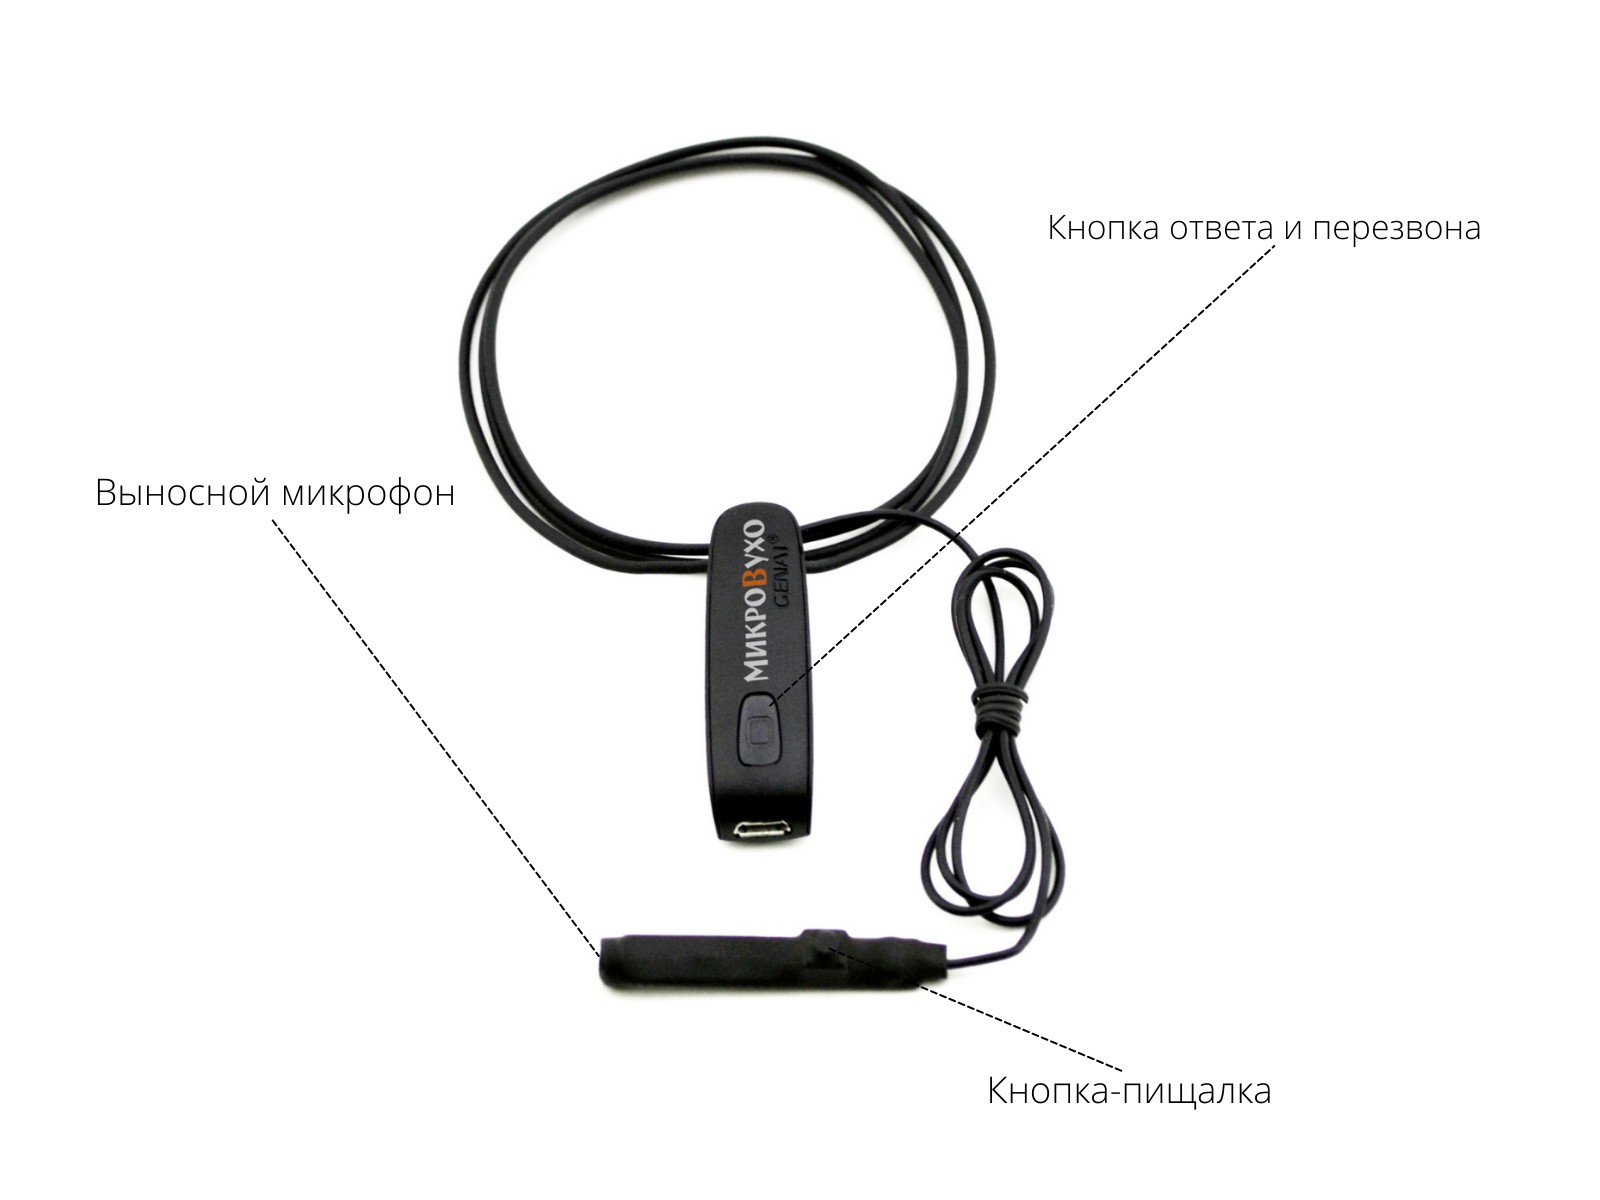 Универсальная гарнитура Bluetooth Basic с капсулой Premium и магнитами 2 мм 4